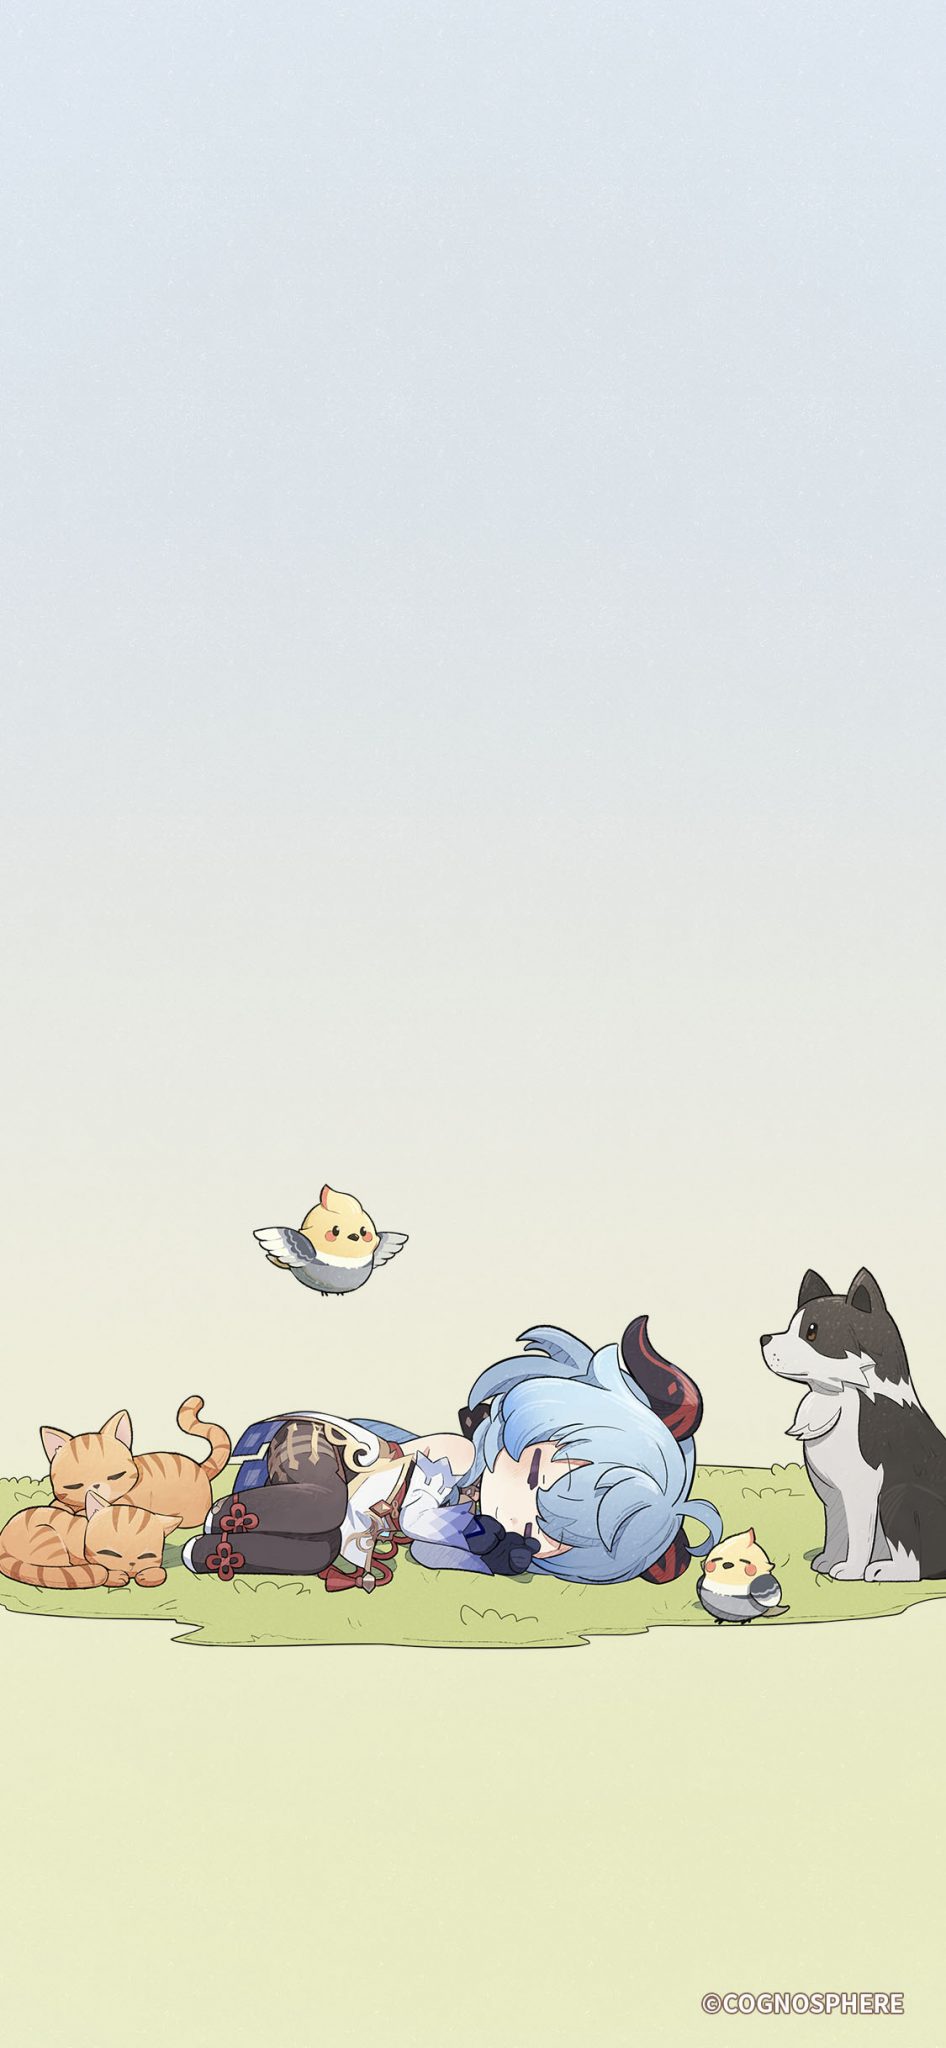 Anime, anime girl, anime wallpaper, anime phone wallpaper, phone wallpaper, cat, dog, bird - Funny